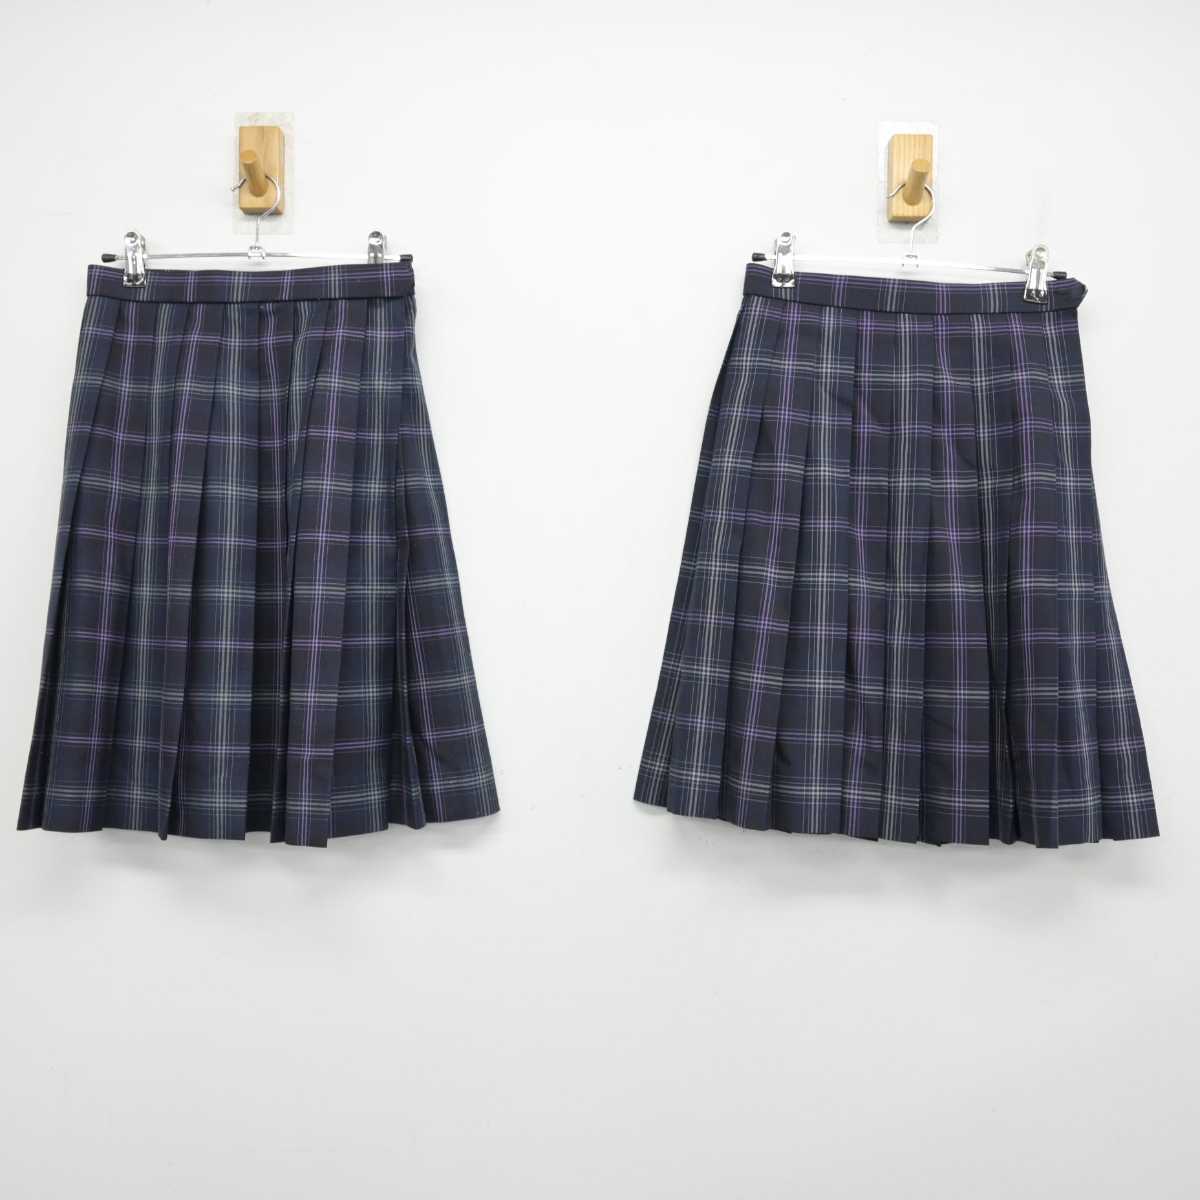 飛鳥未来高等学校 制服 スカート 女性用 - スカート